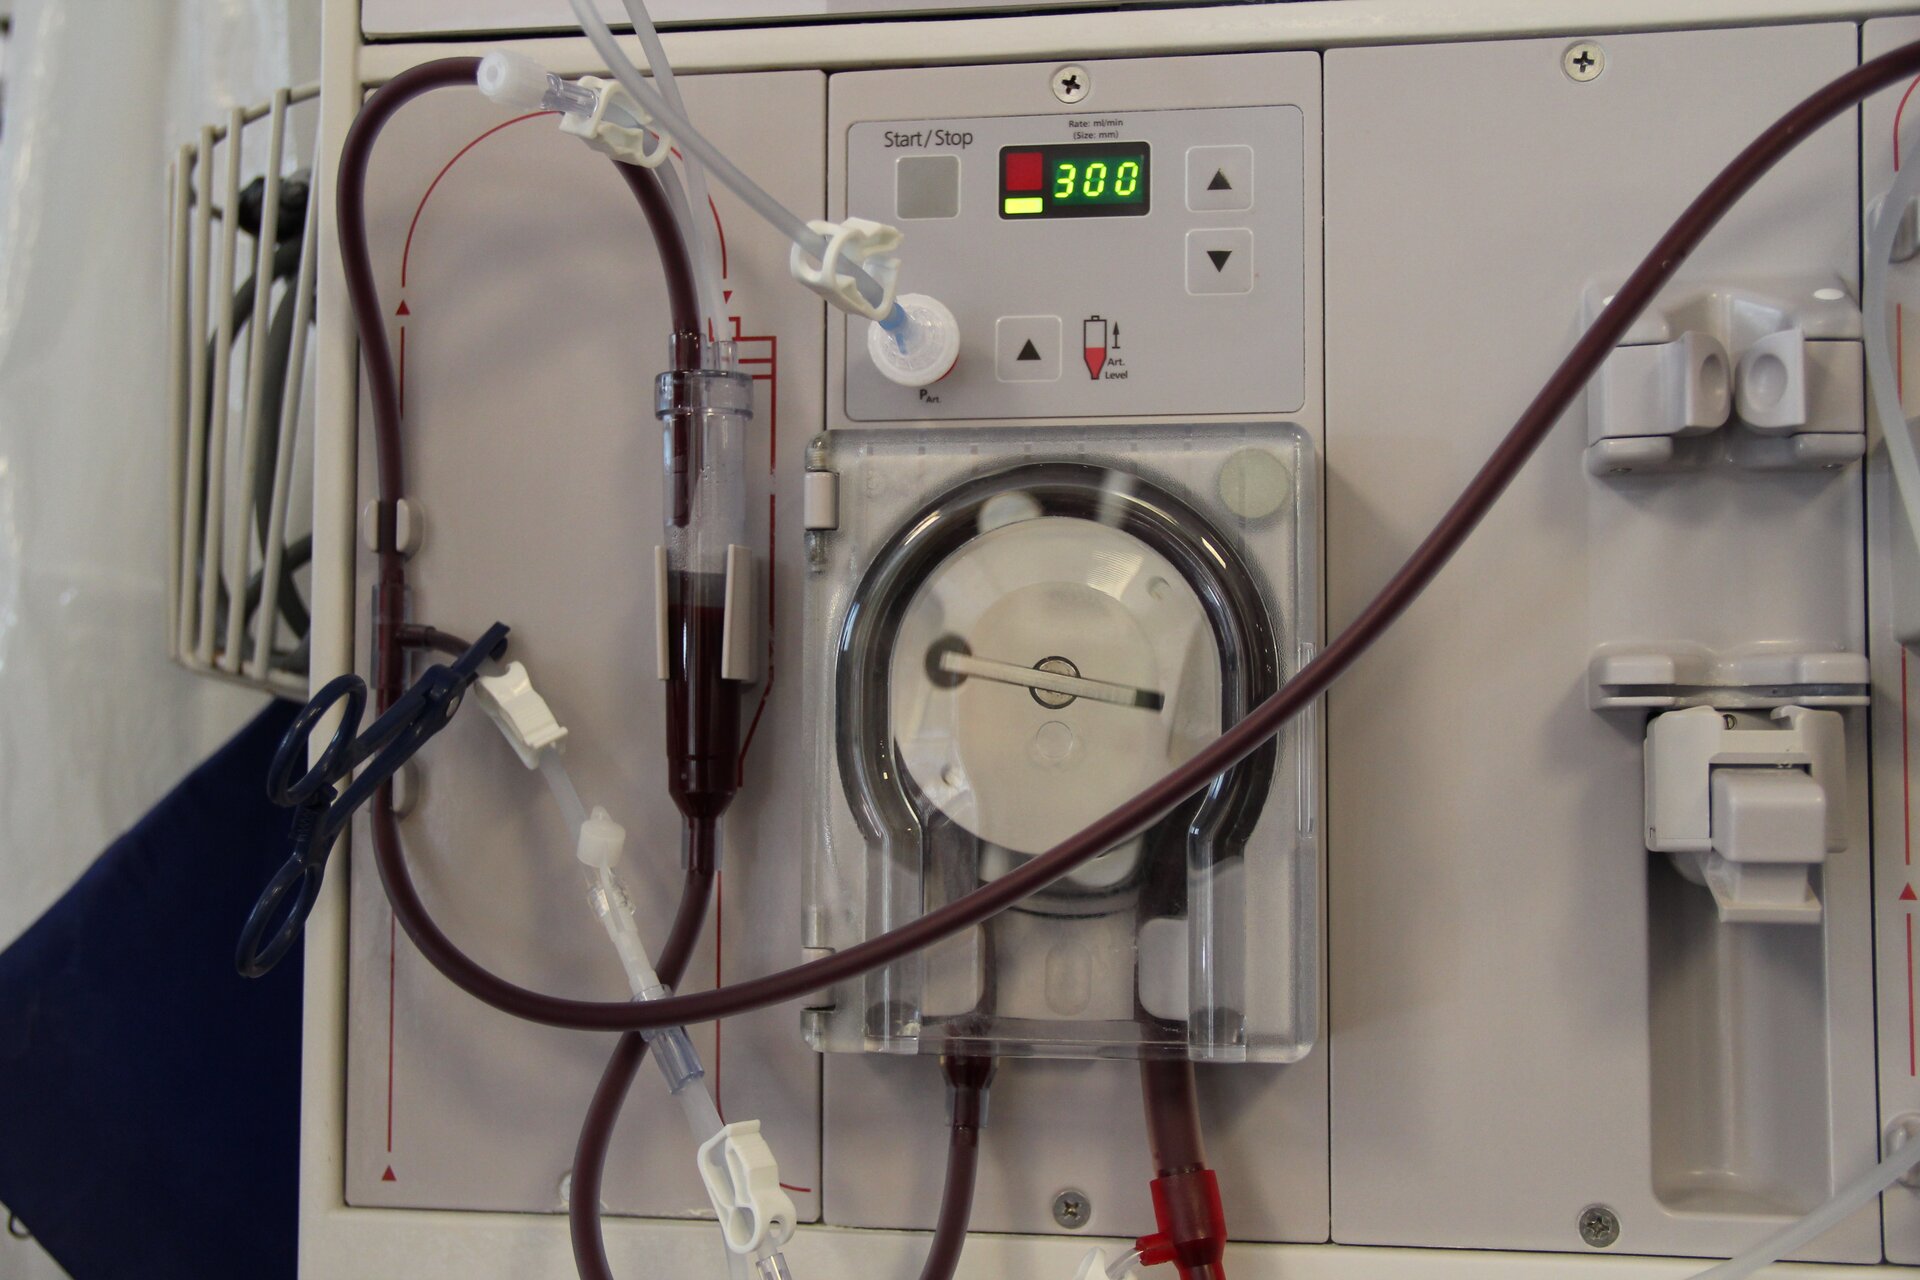 Na zdjęciu pokazany jest aparat do dializy. Jest to jasnoszare urządzenie, które w górnej części posiada przyciski do sterowania oraz wyświetlacz. Poniżej znajdują się przeźroczyste przewody, w których płynie krew. 